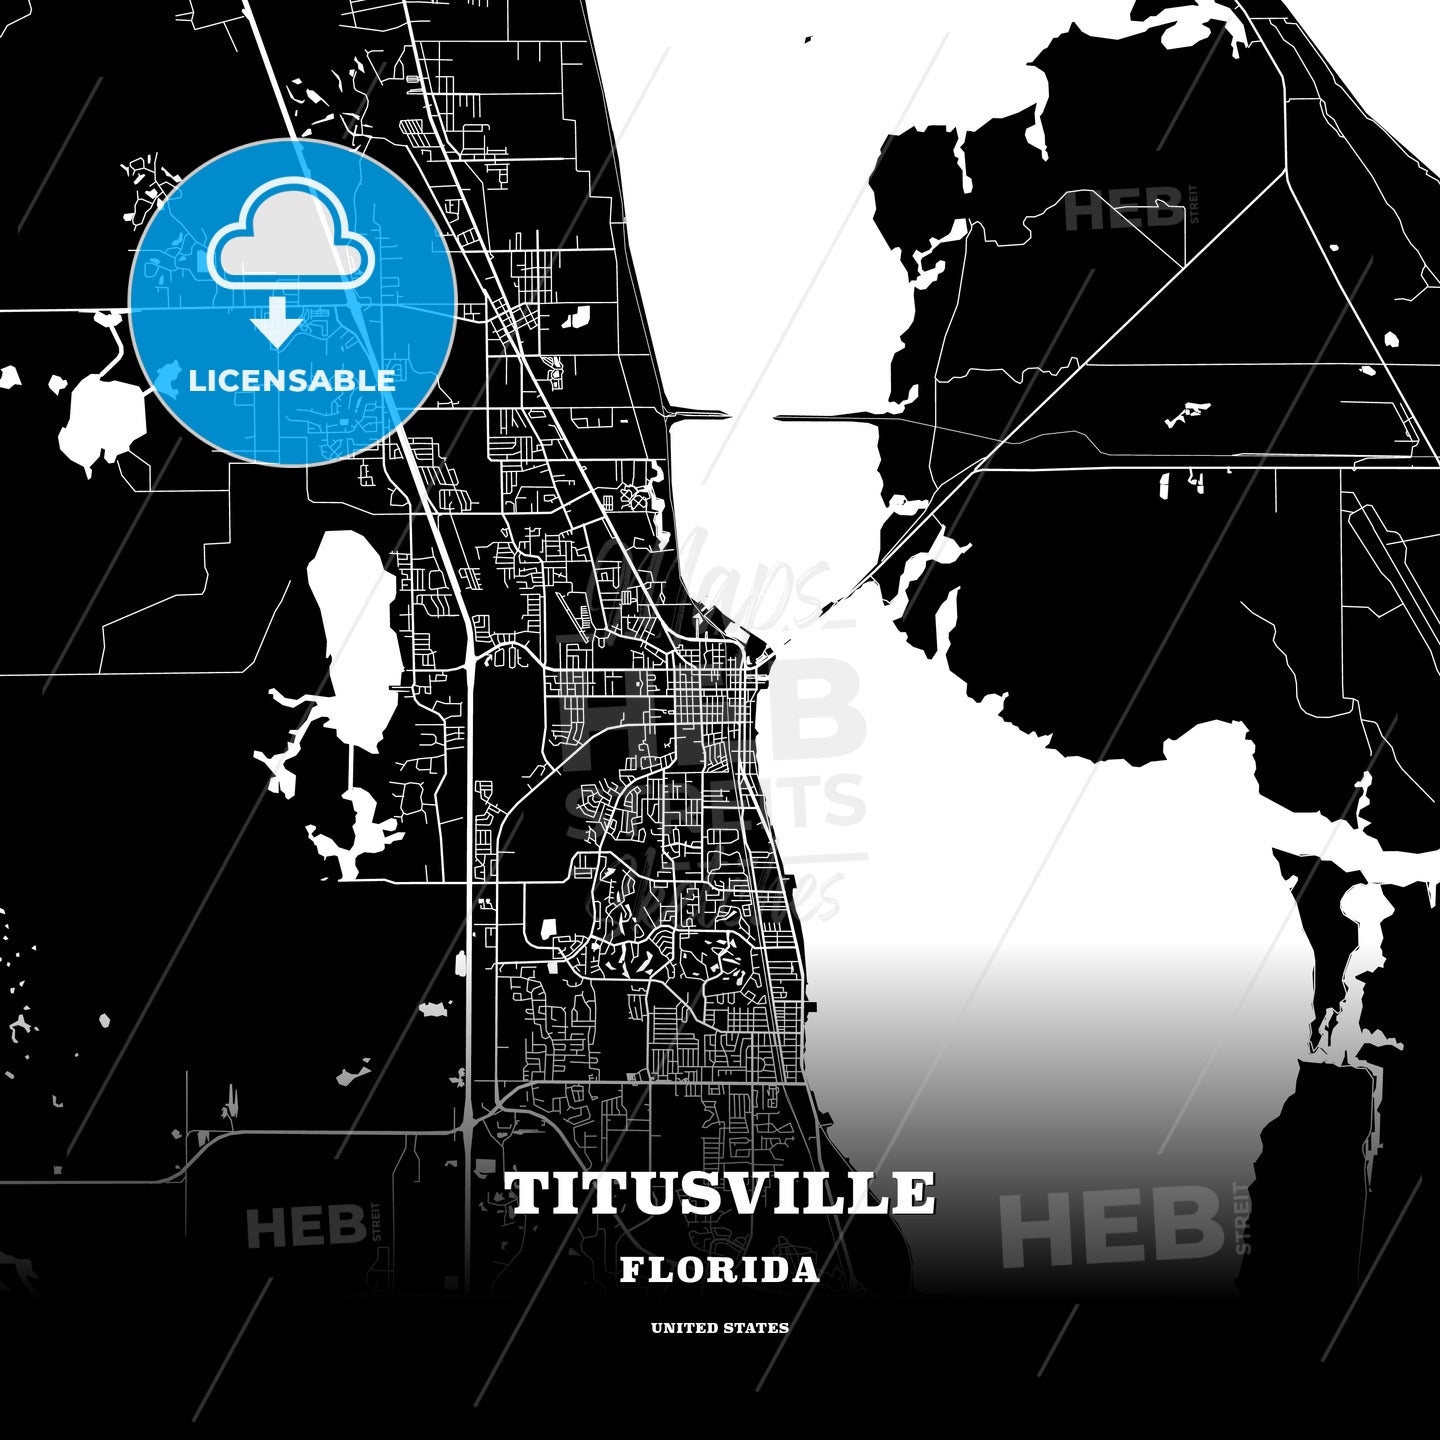 Titusville, Florida, USA map